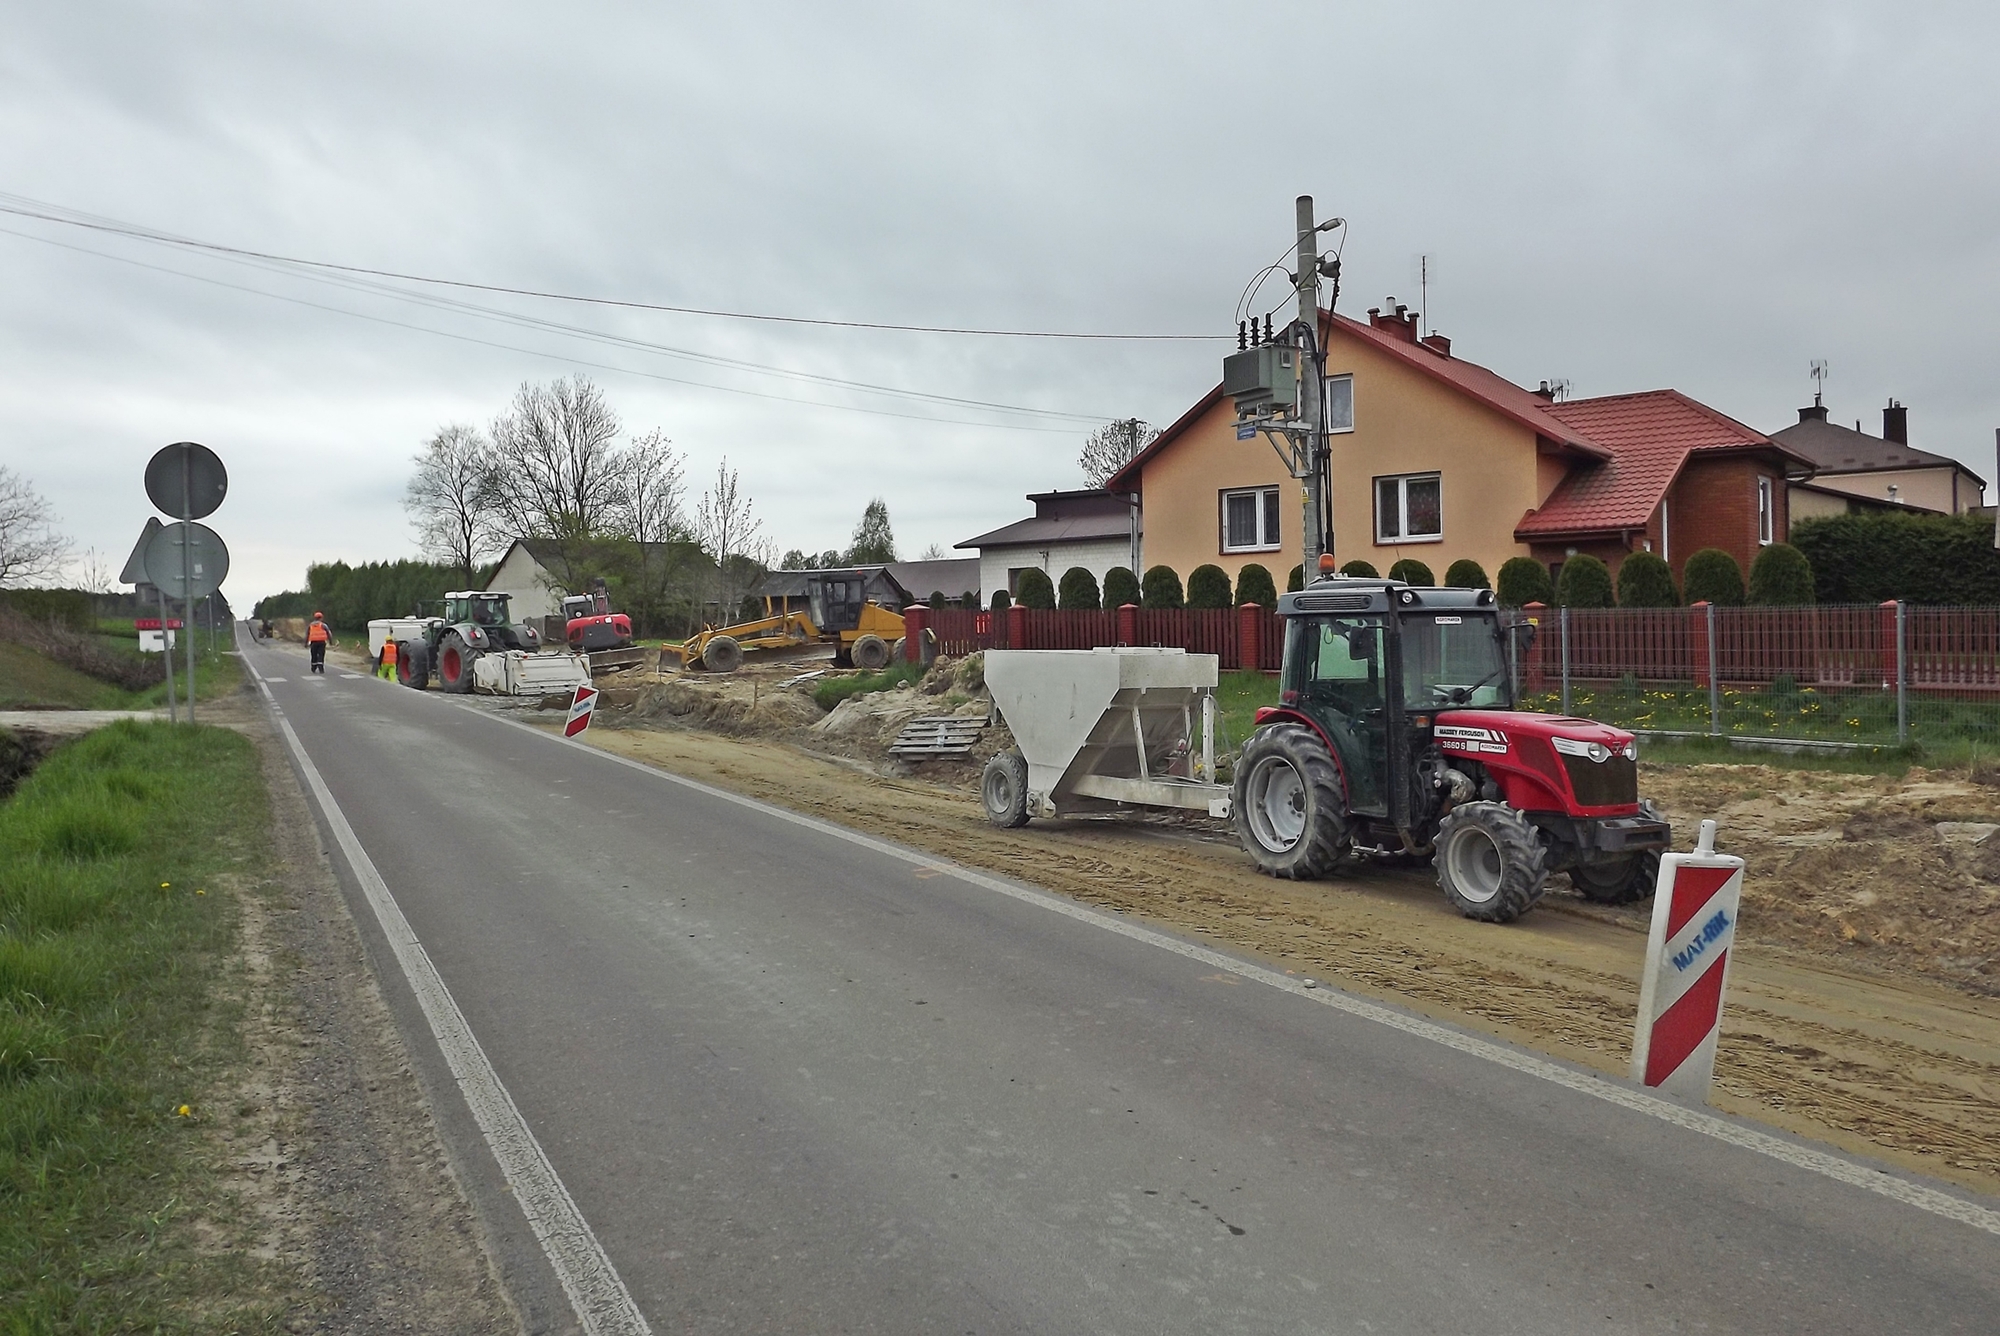 Zdjęcie przedstawia przebudowę drogi wojewódzkiej Nr 835 w Tarnogrodzie - utwardzanie pobocza za pomocą specjalnej maszyny.